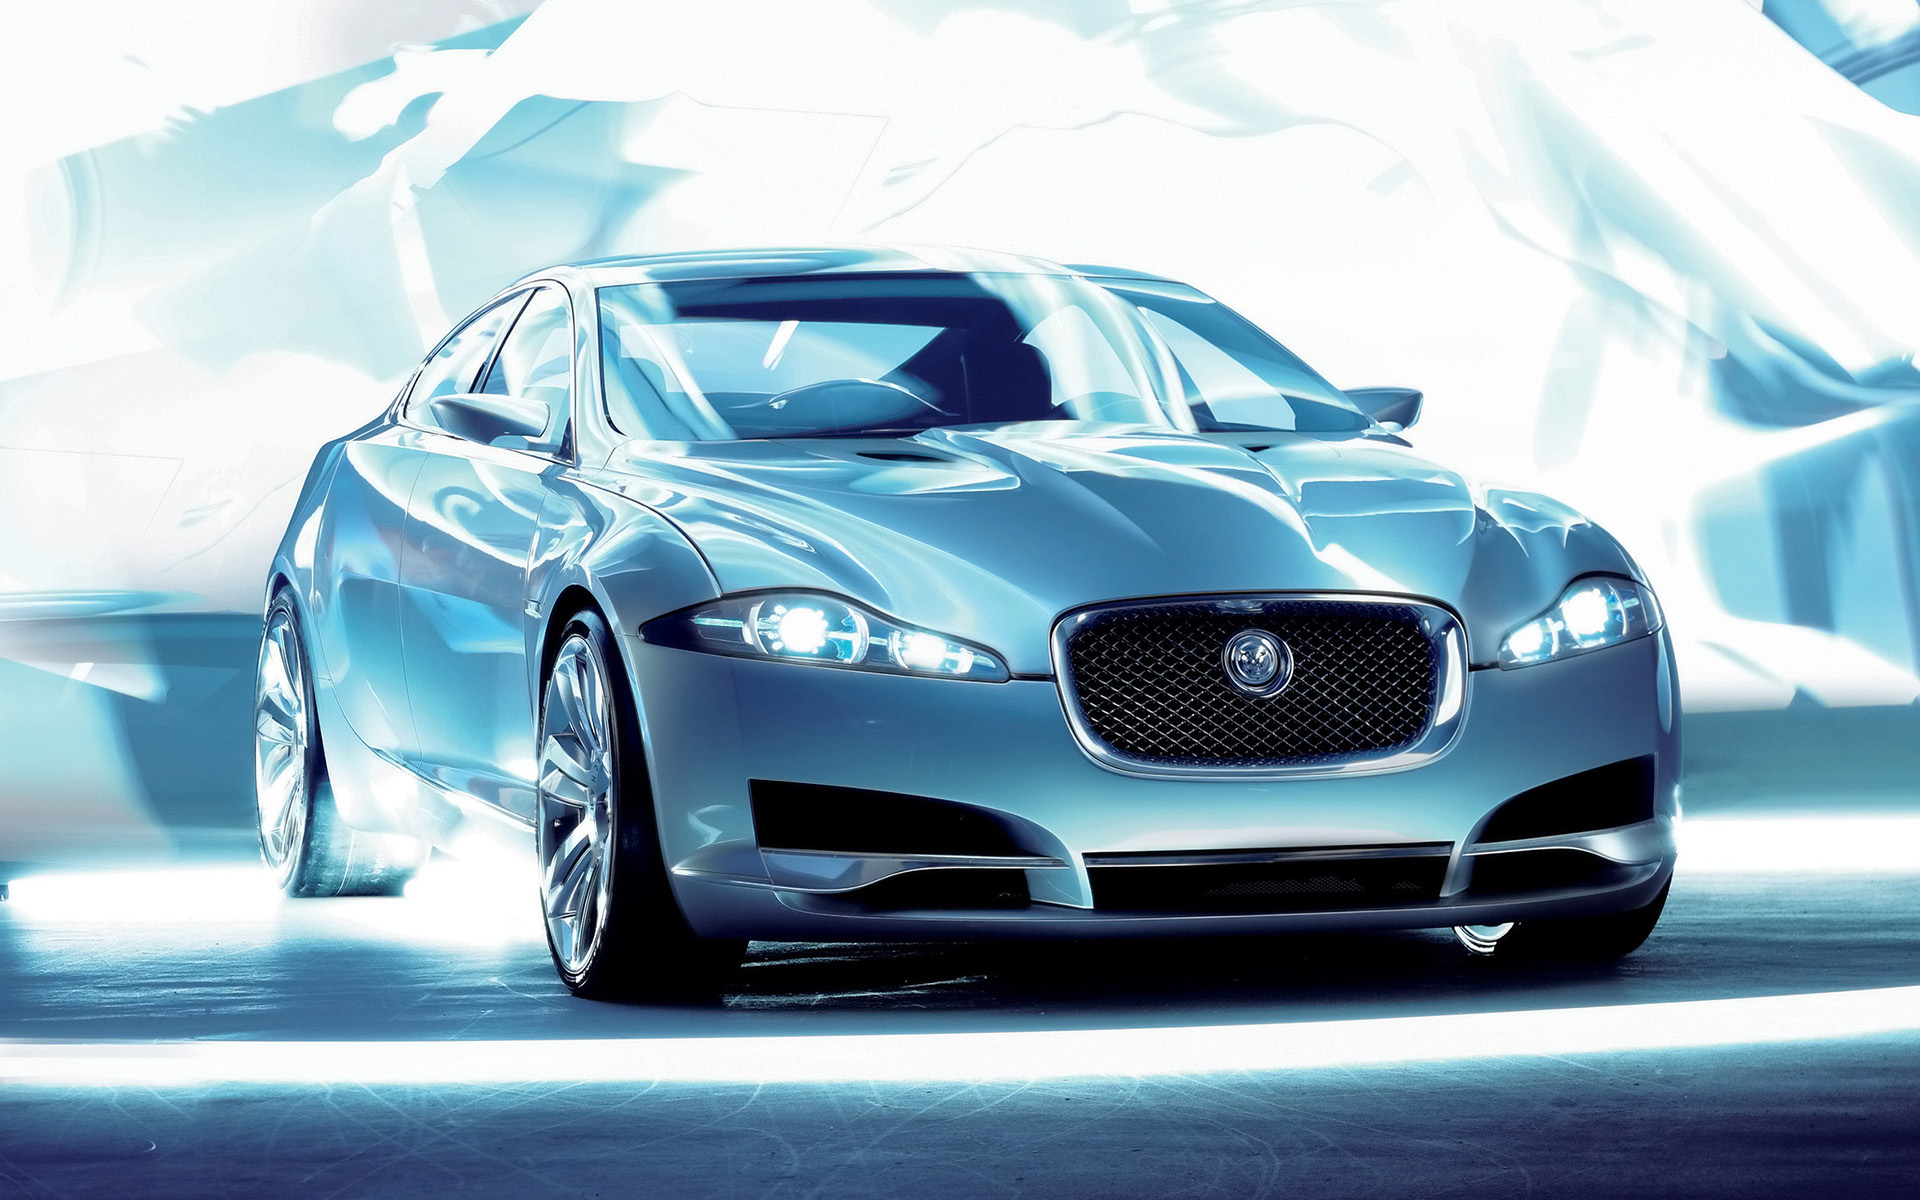  2007 Jaguar C-XF Concept Wallpaper.